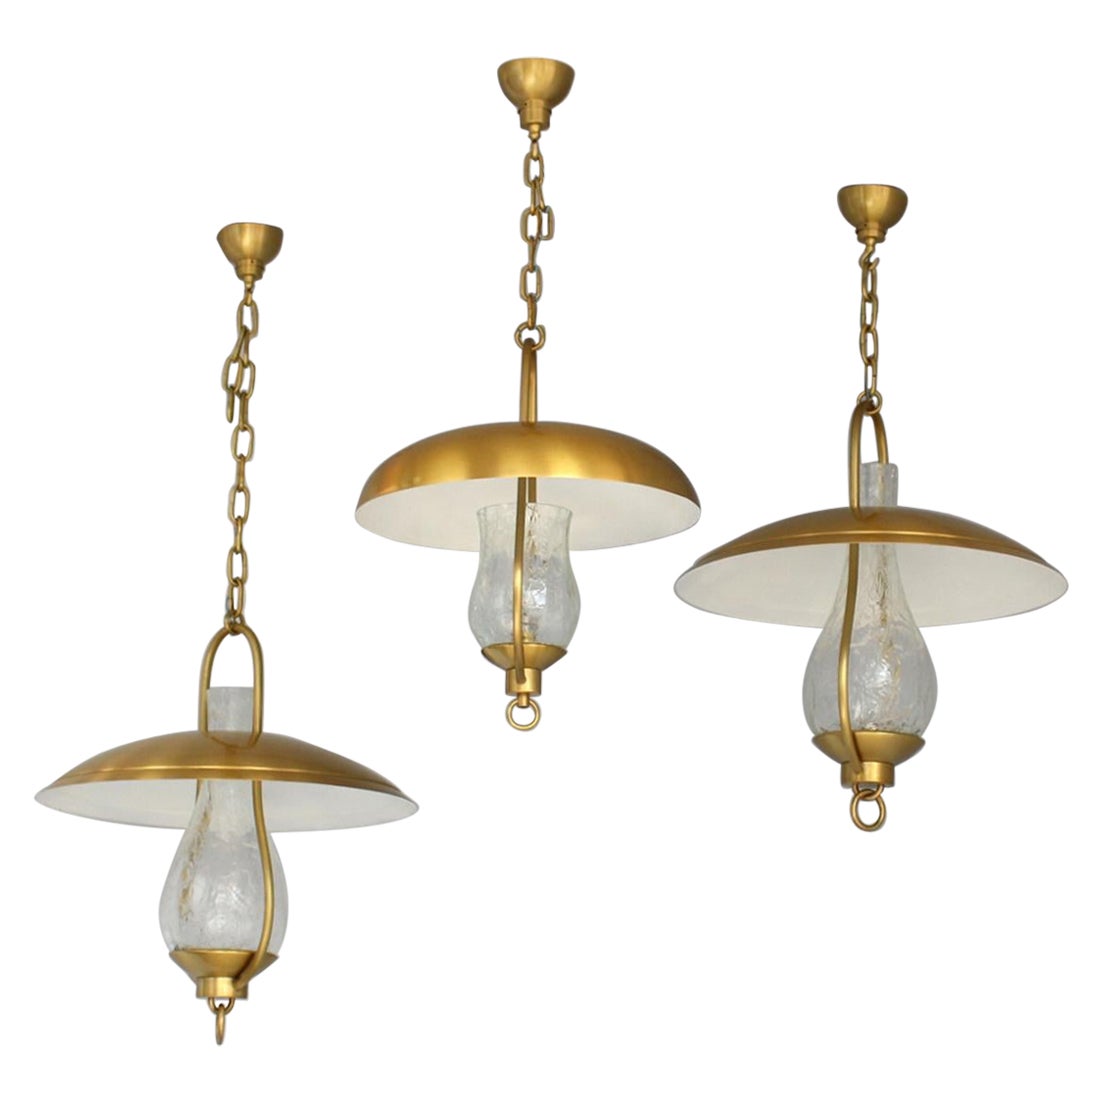 3 belles lanternes françaises suspendues en bronze et verre "craquelé". et verre craquelé de Jean Perzel